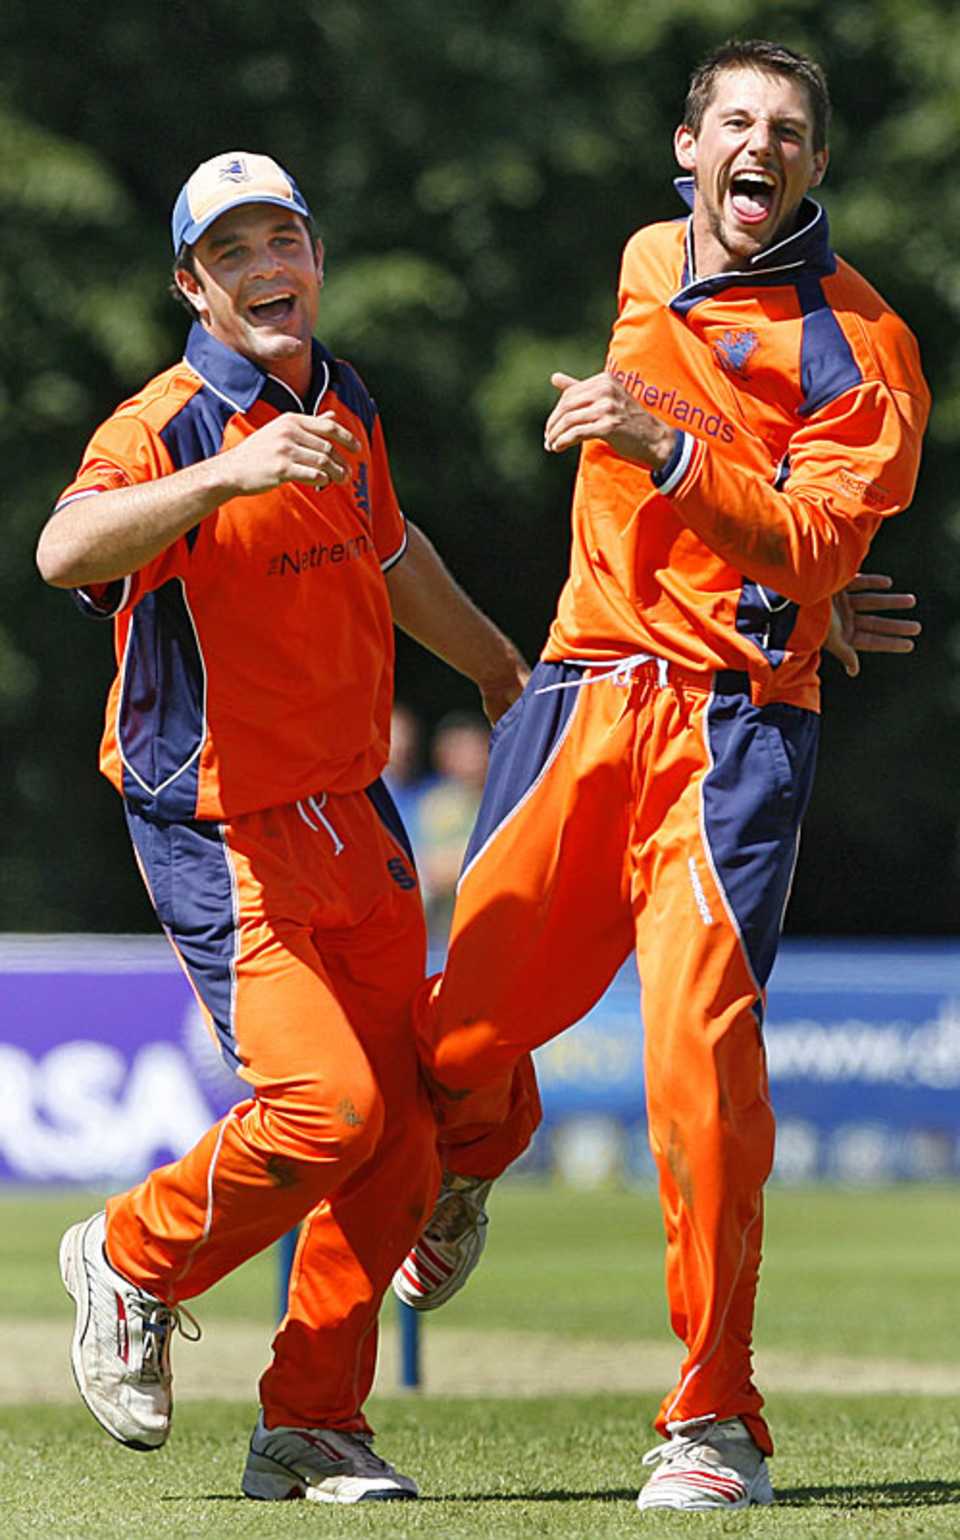 Peter Borren and Pieter Seelaar celebrate another wicket during Netherlands' victory over Kenya